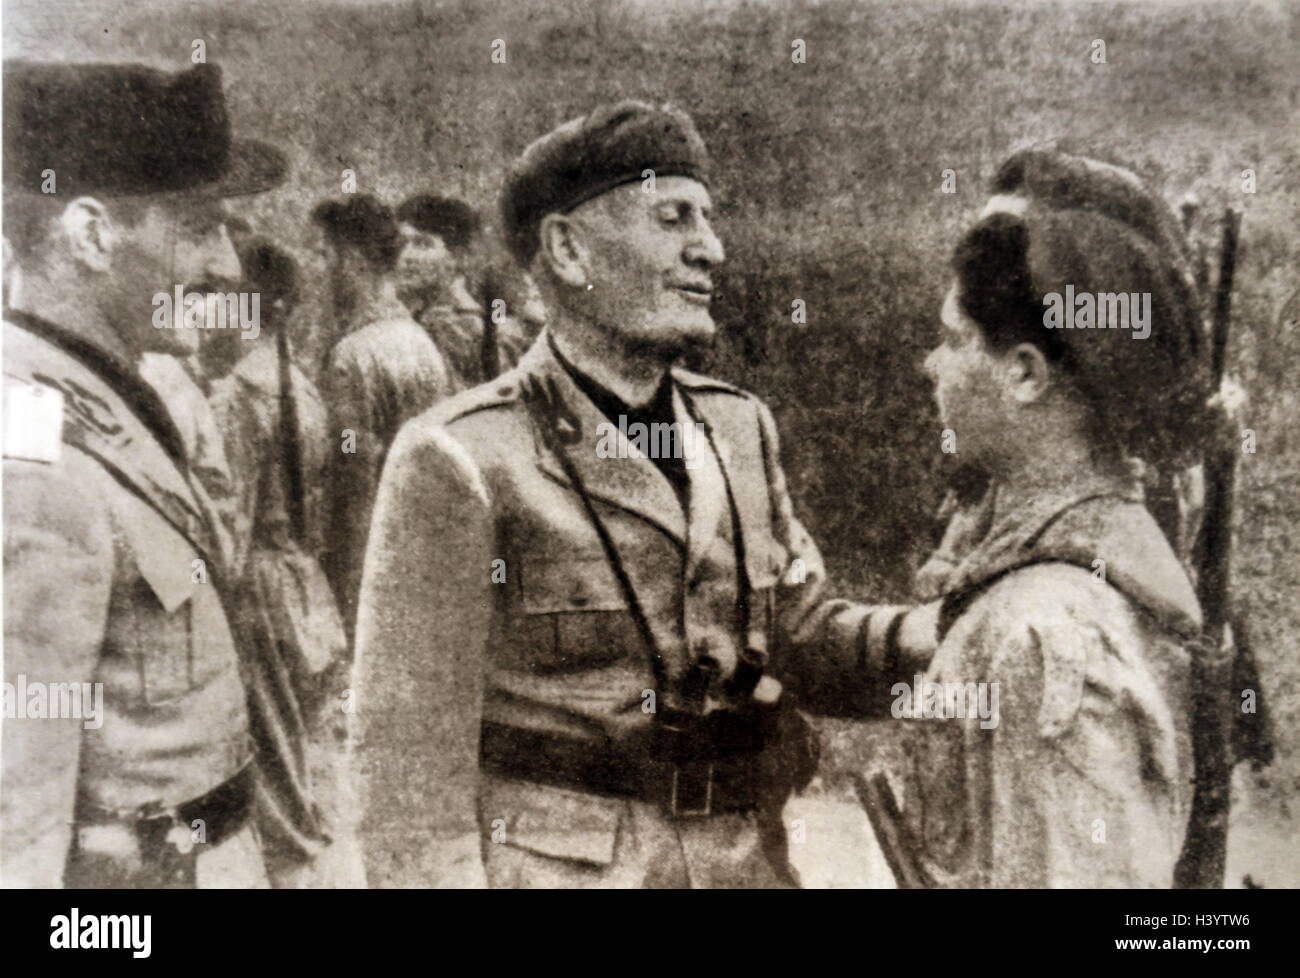 Fotografia di Benito Mussolini (1883-1945) un politico italiano, giornalista e leader del Partito Nazionale Fascista. In data xx secolo Foto Stock